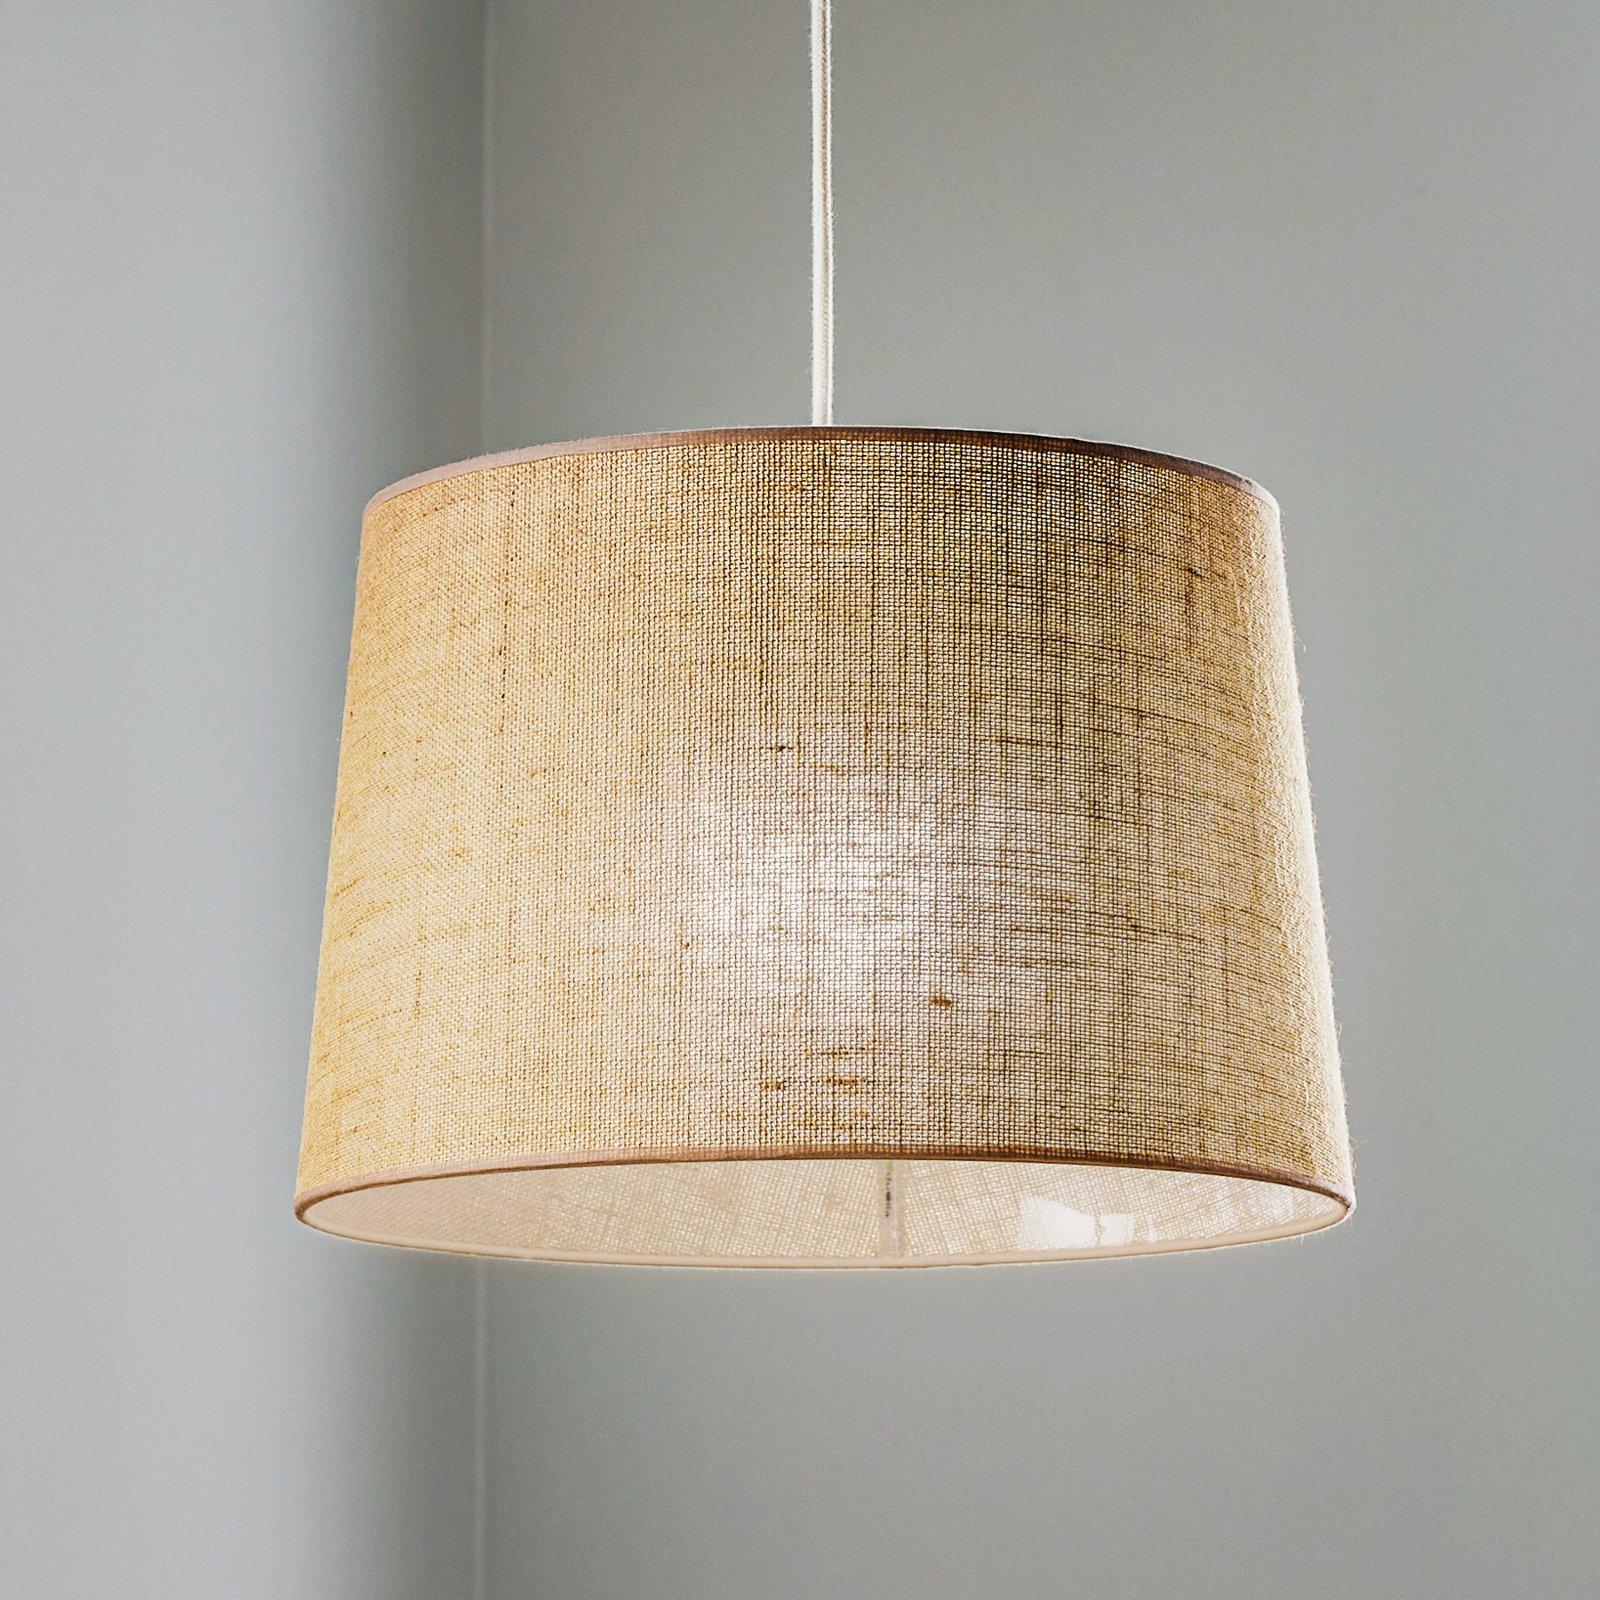 Hanglamp Jute, natuurlijk bruin, Ø40cm 1-lamp